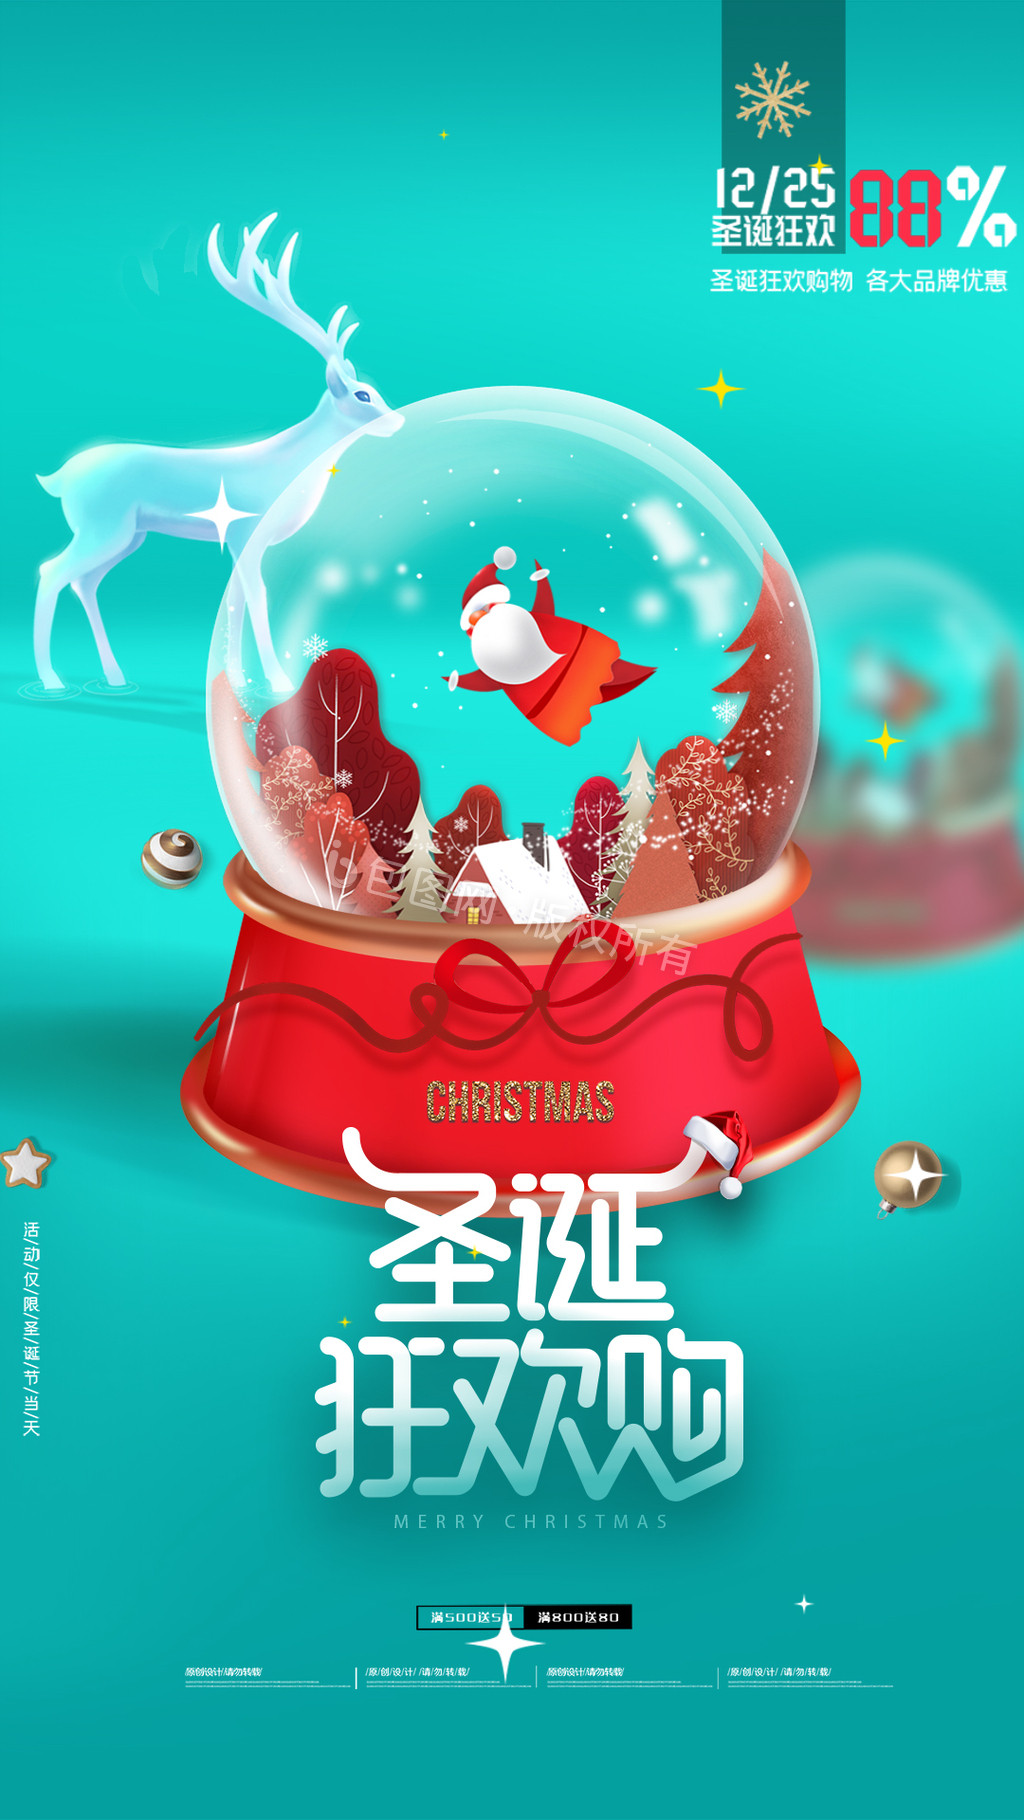 简约流行色水晶球圣诞节动态海报GIF